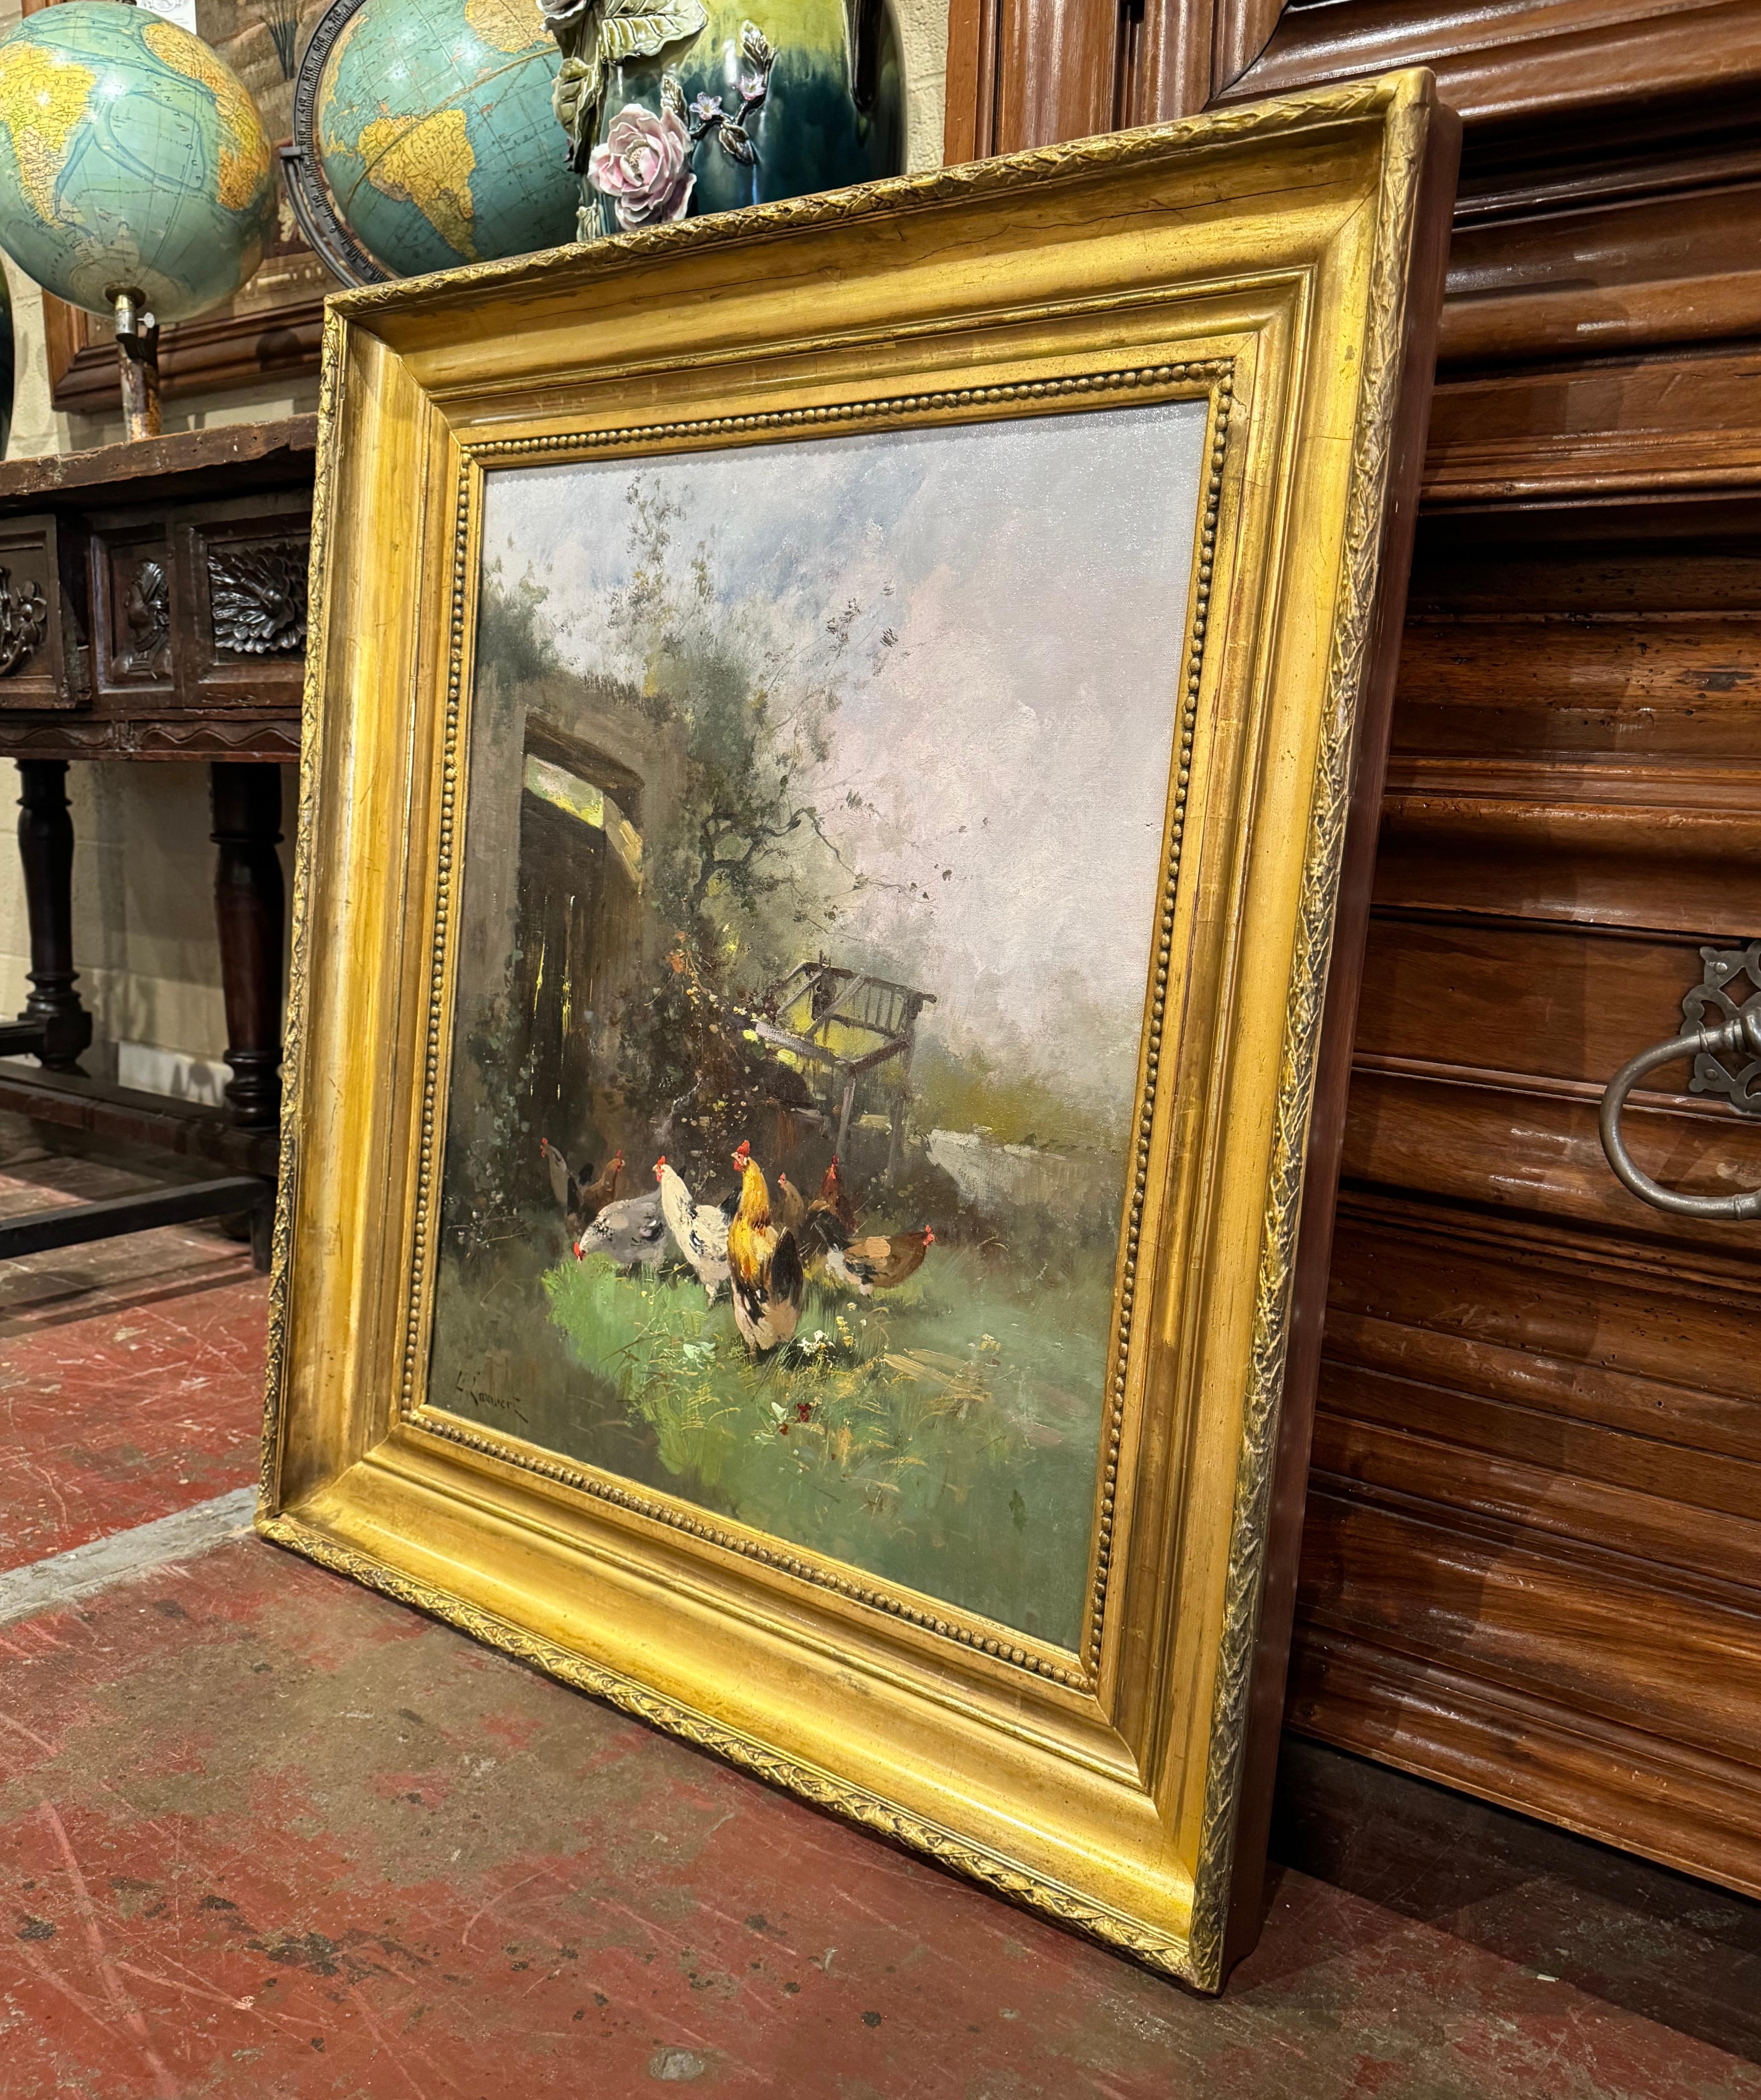 Dekorieren Sie ein Arbeitszimmer, Büro oder DEN mit diesem schönen und farbenfrohen Ölgemälde auf Leinwand! Das um 1890 in Frankreich gemalte Kunstwerk befindet sich in einem geschnitzten Rahmen aus vergoldetem Holz aus dem 19. Jahrhundert und zeigt